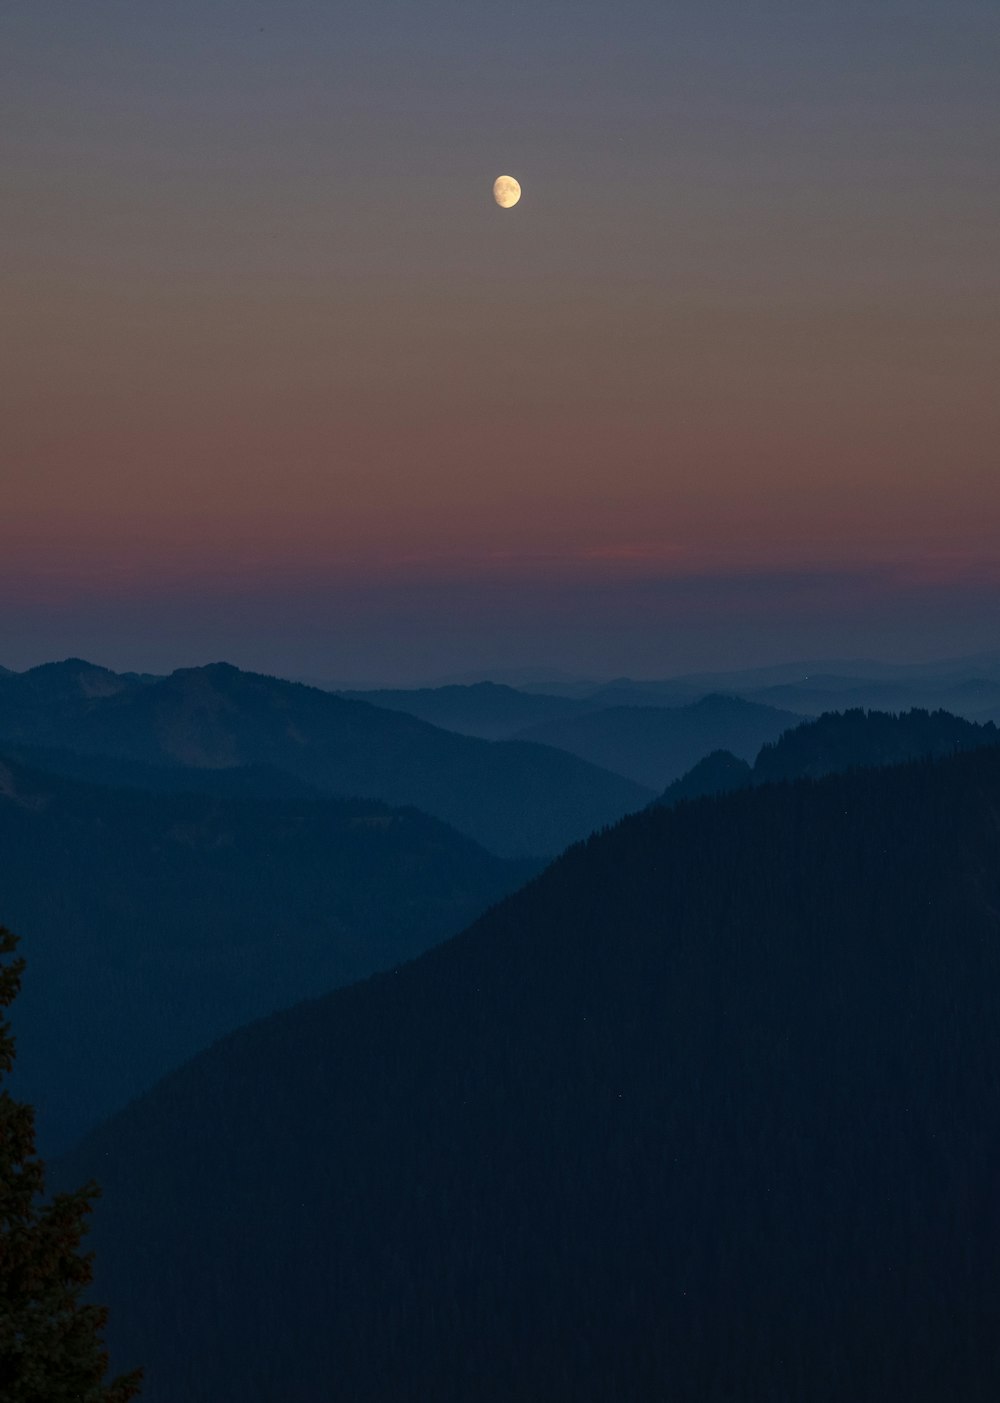 Une pleine lune est vue au-dessus d’une chaîne de montagnes